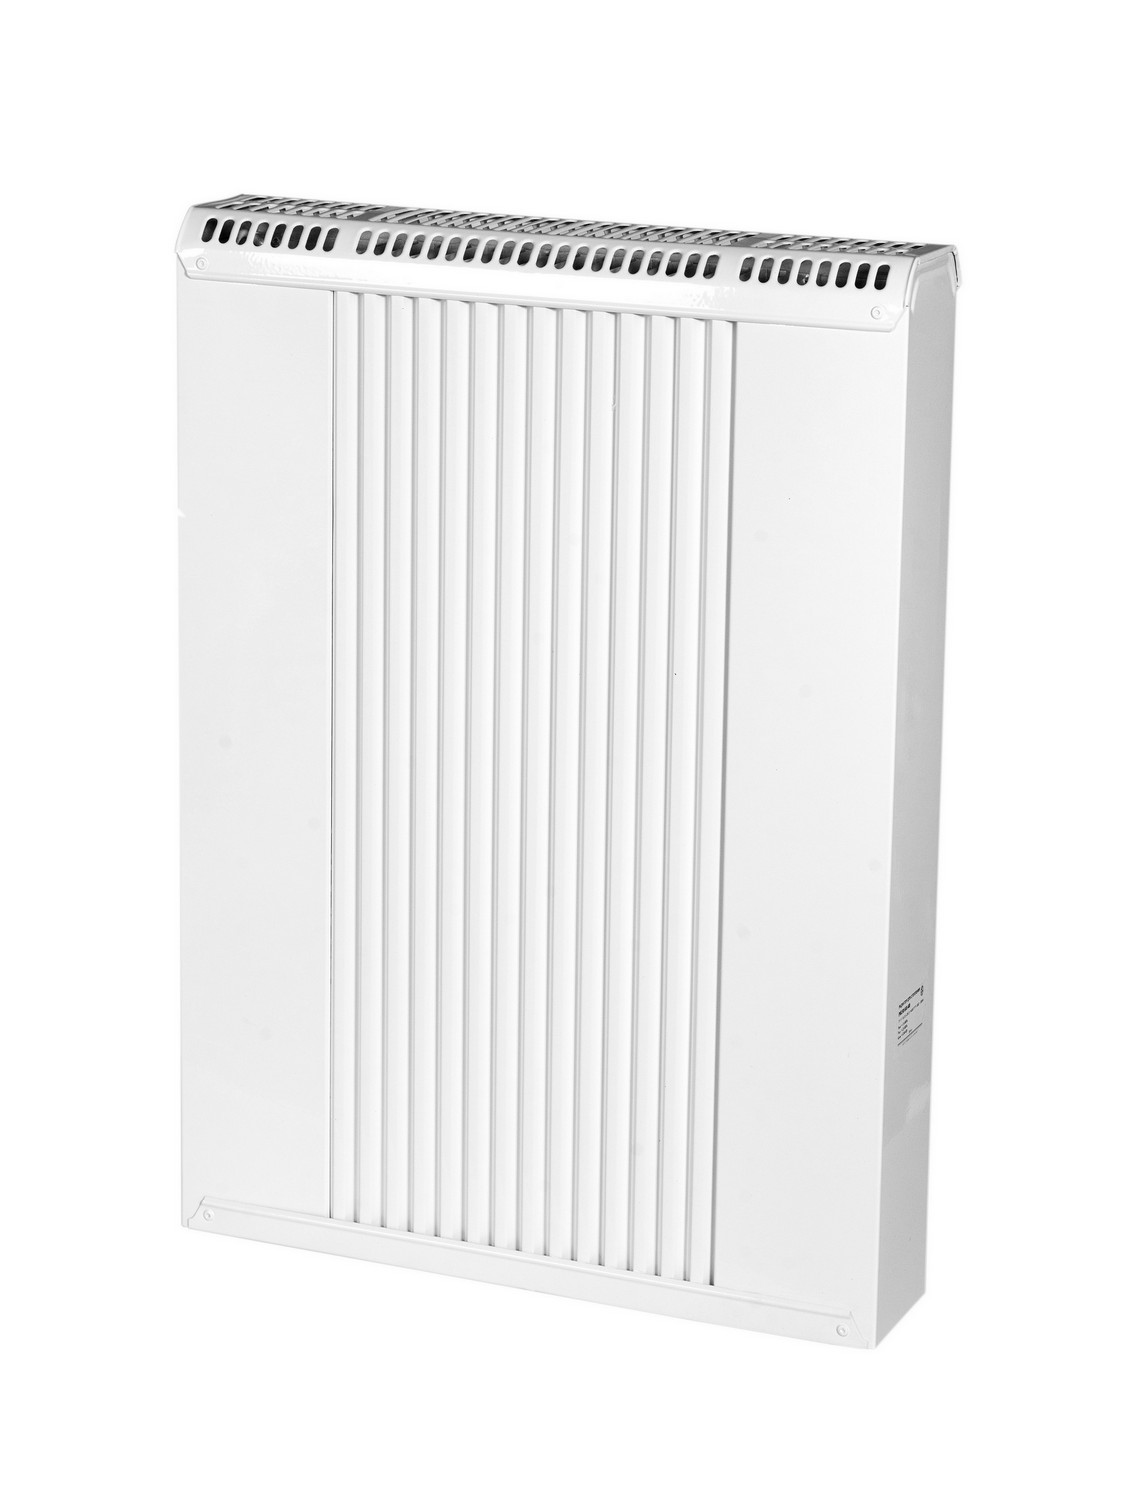 Радиатор для отопления Термия РБ 60/40 в интернет-магазине, главное фото